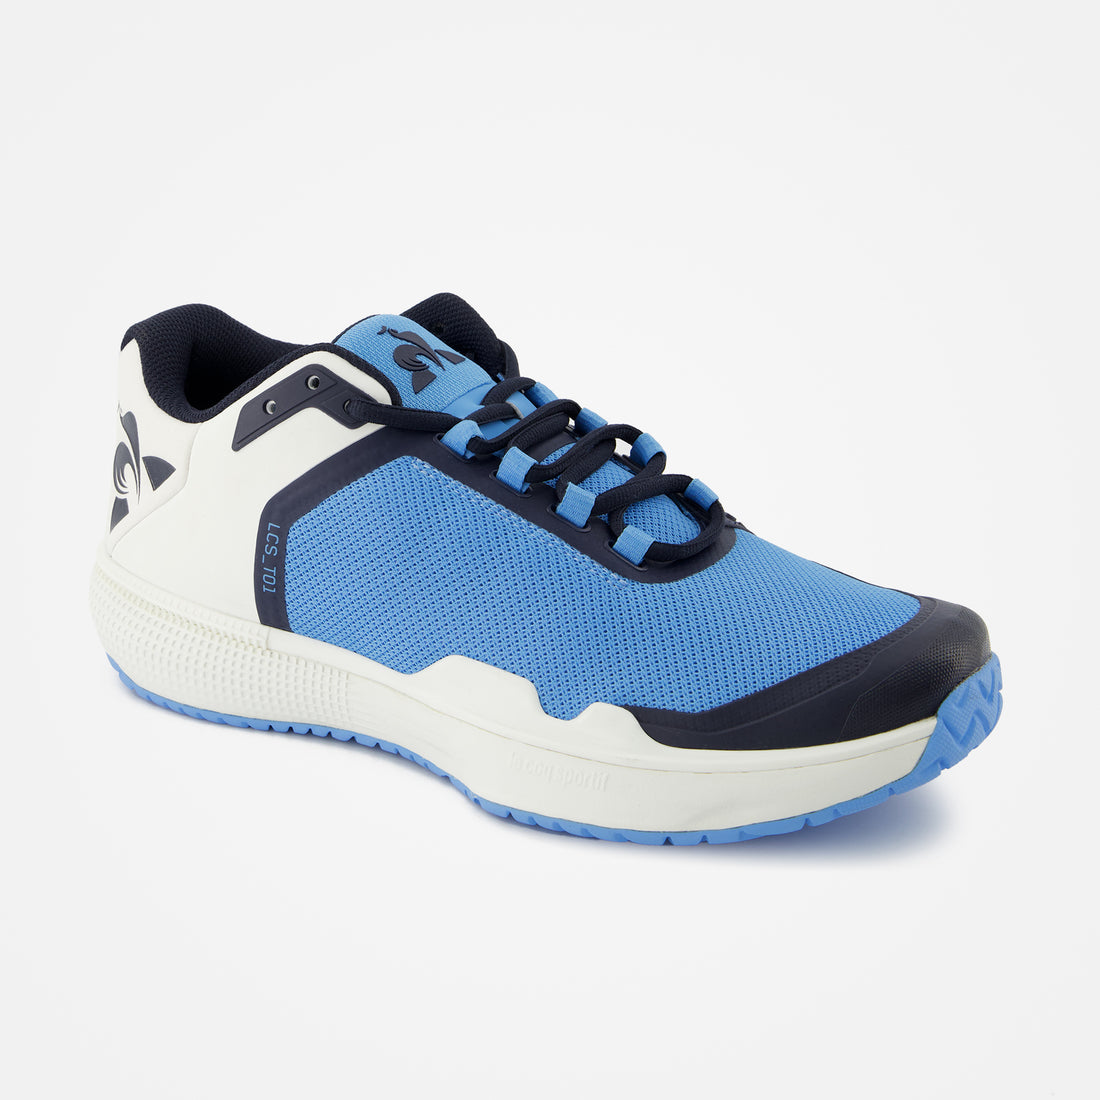 2320117-FUTUR LCS T01 ALL COURT bonnie blue  | Shoes de tennis FUTUR LCS T01 ALL COURT Unisex